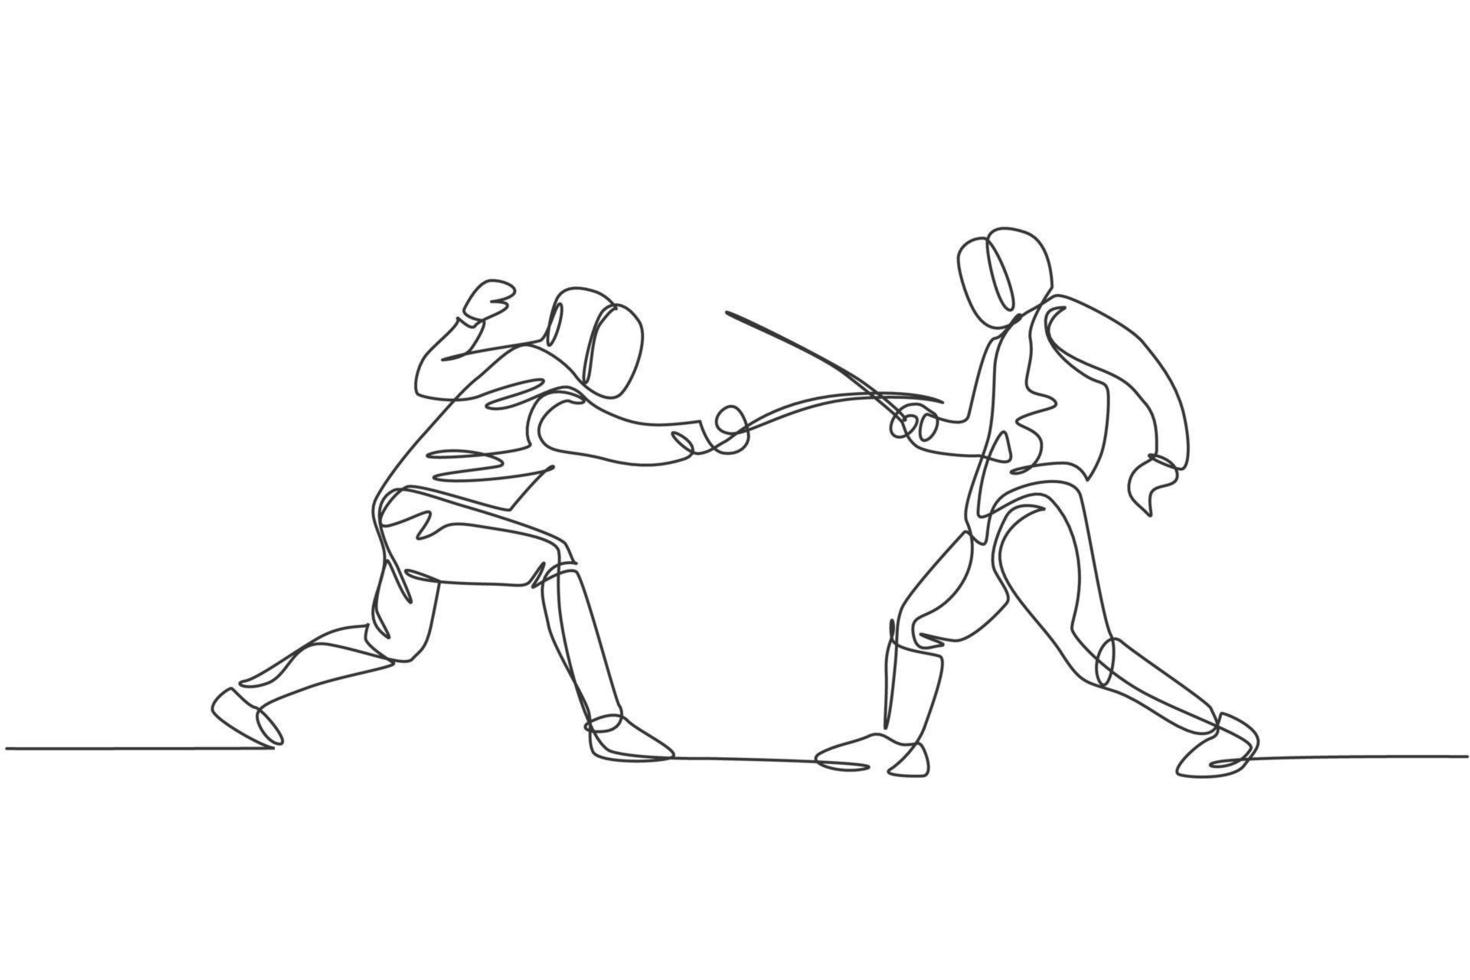 un dibujo de línea continua de dos hombres practicando atletas de esgrima peleando en un campo deportivo profesional. traje de esgrima y concepto de espada de sujeción. Ilustración de vector de diseño de dibujo de línea única dinámica